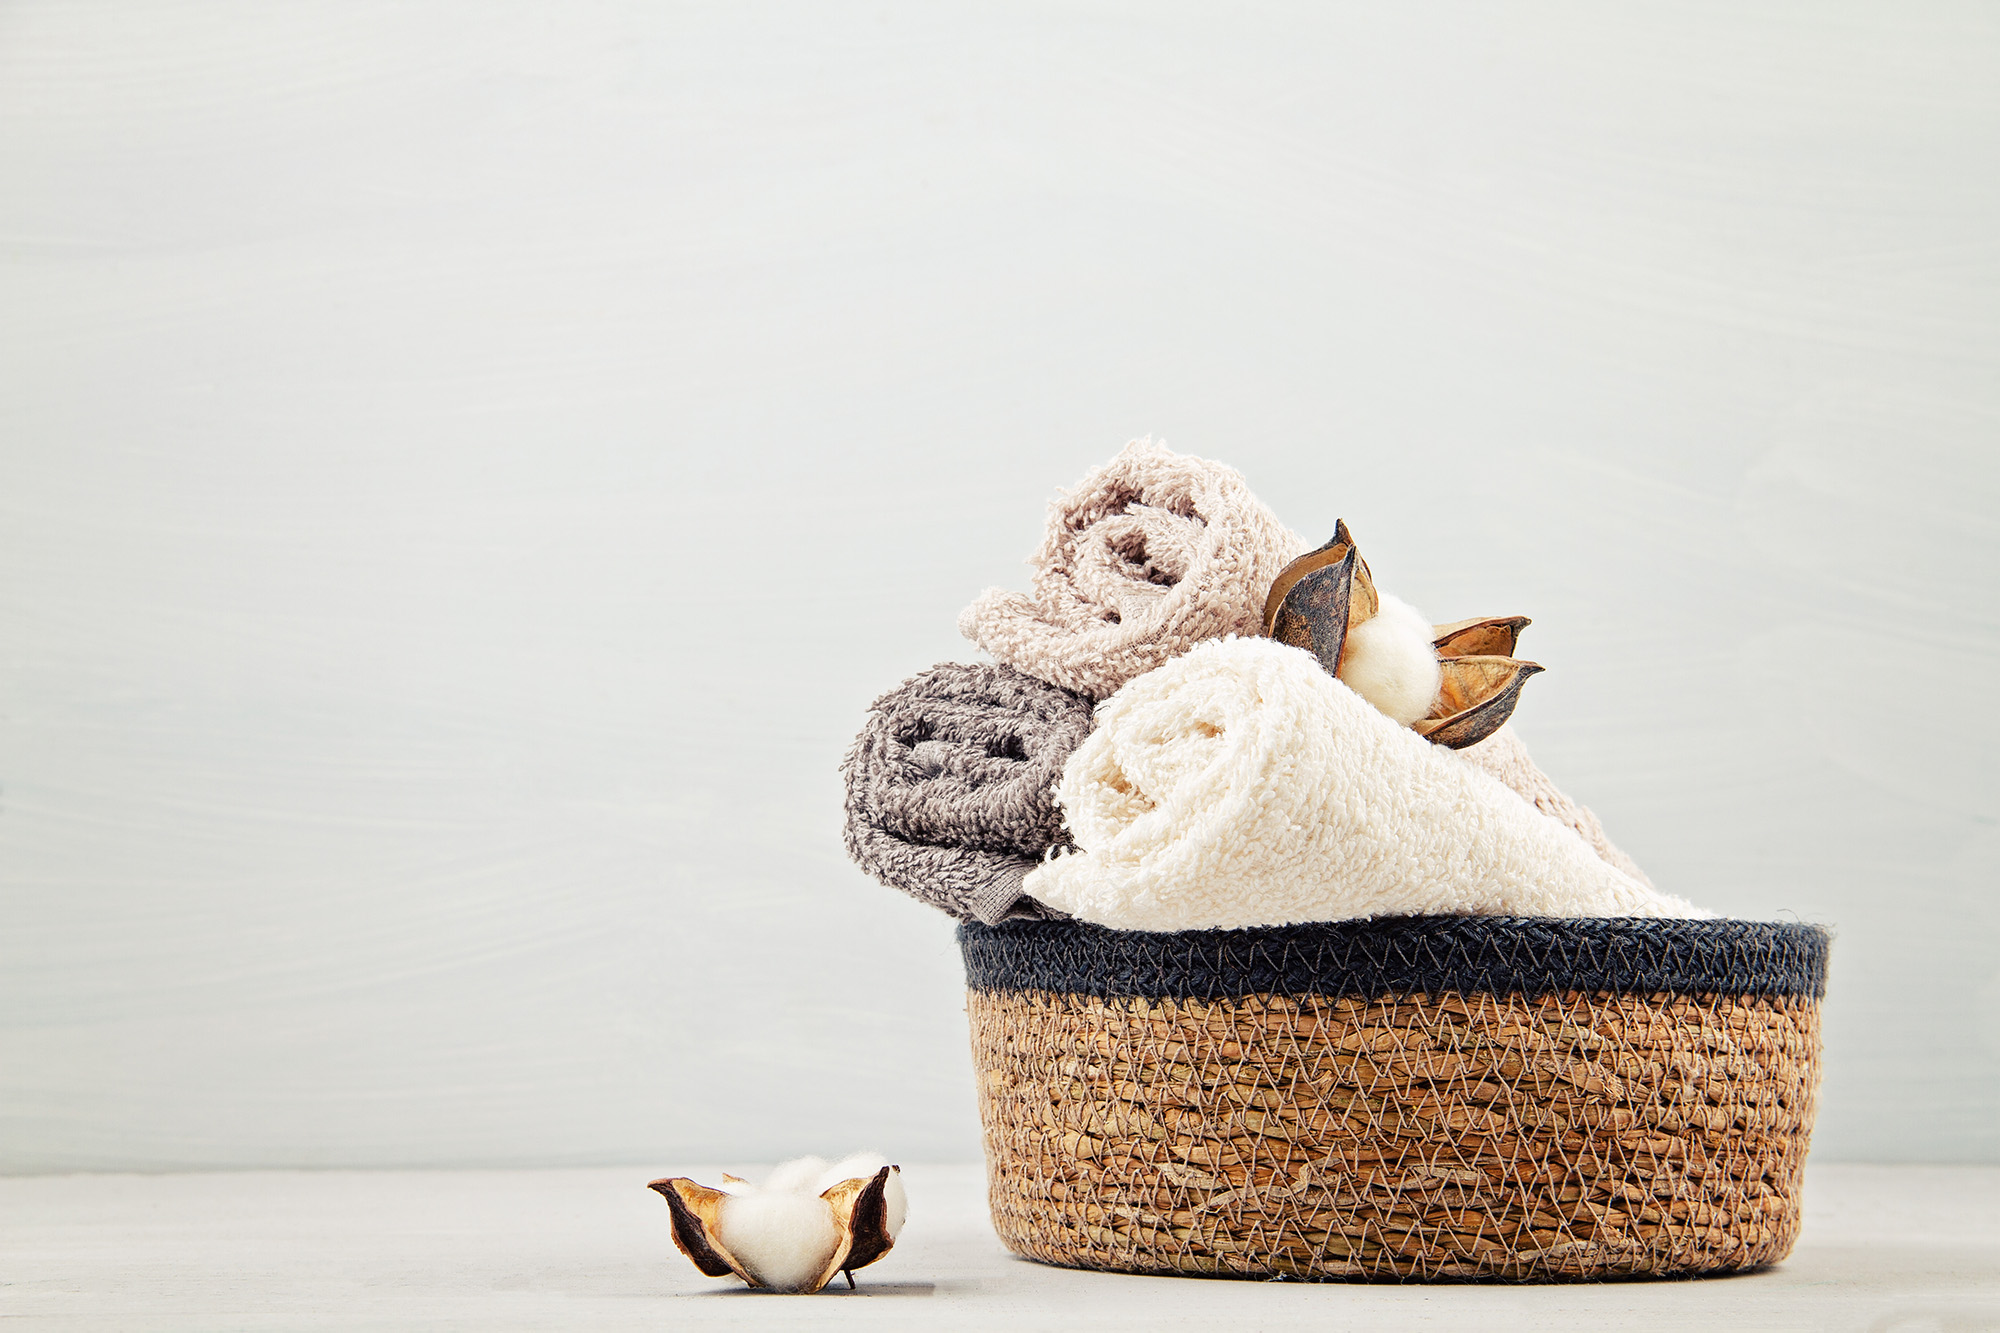 Quarto ou banheiro: qual melhor lugar para guardar as toalhas?